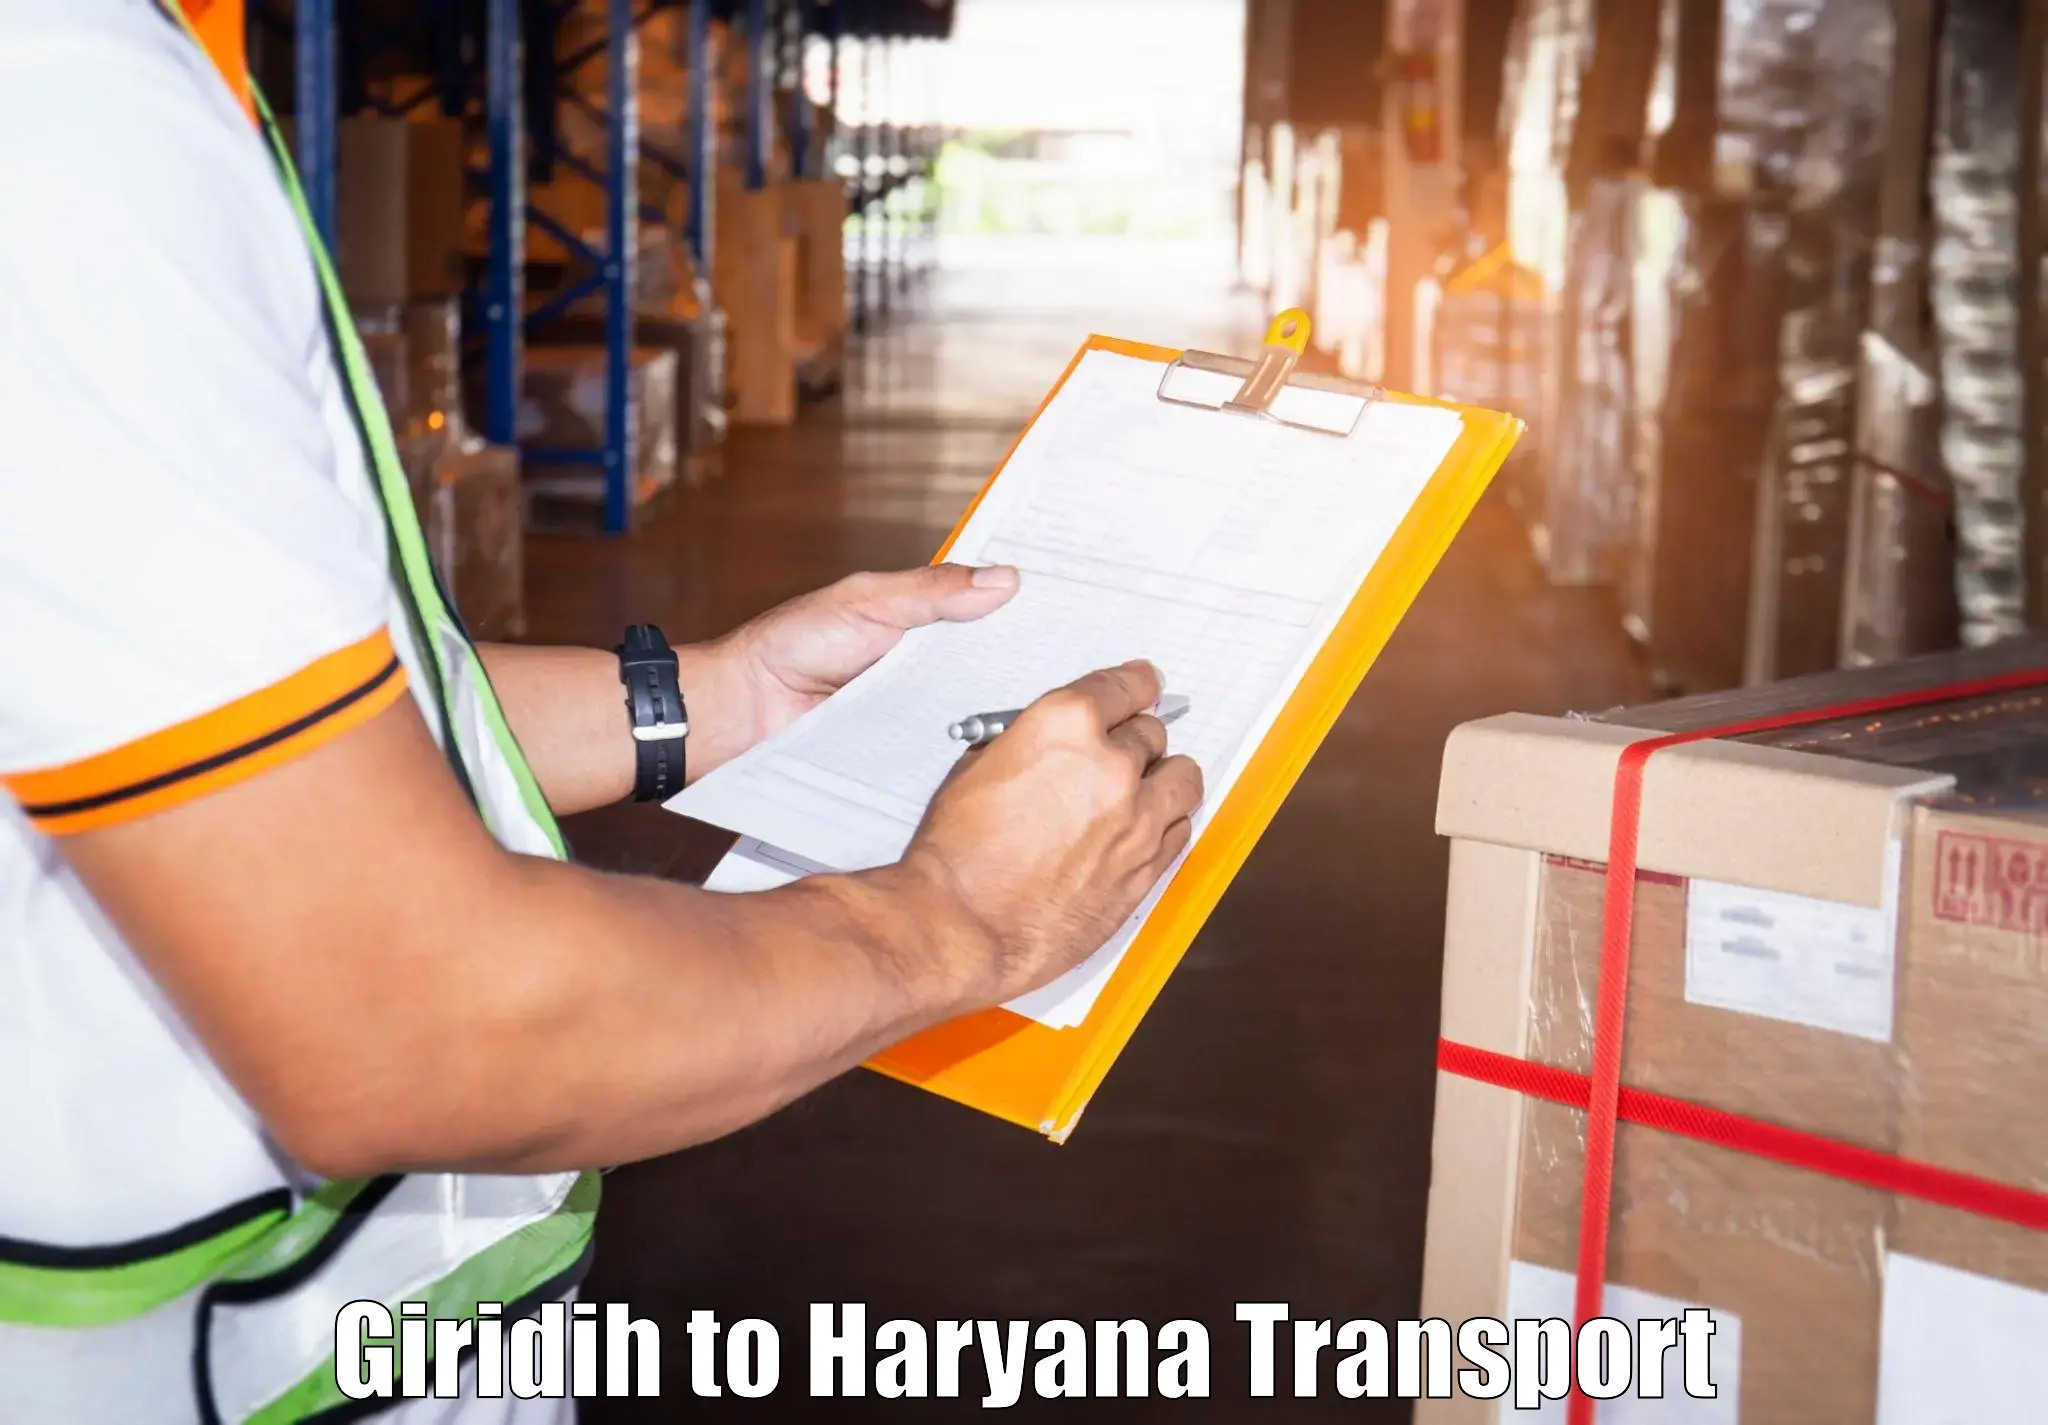 Transport in sharing Giridih to Panchkula